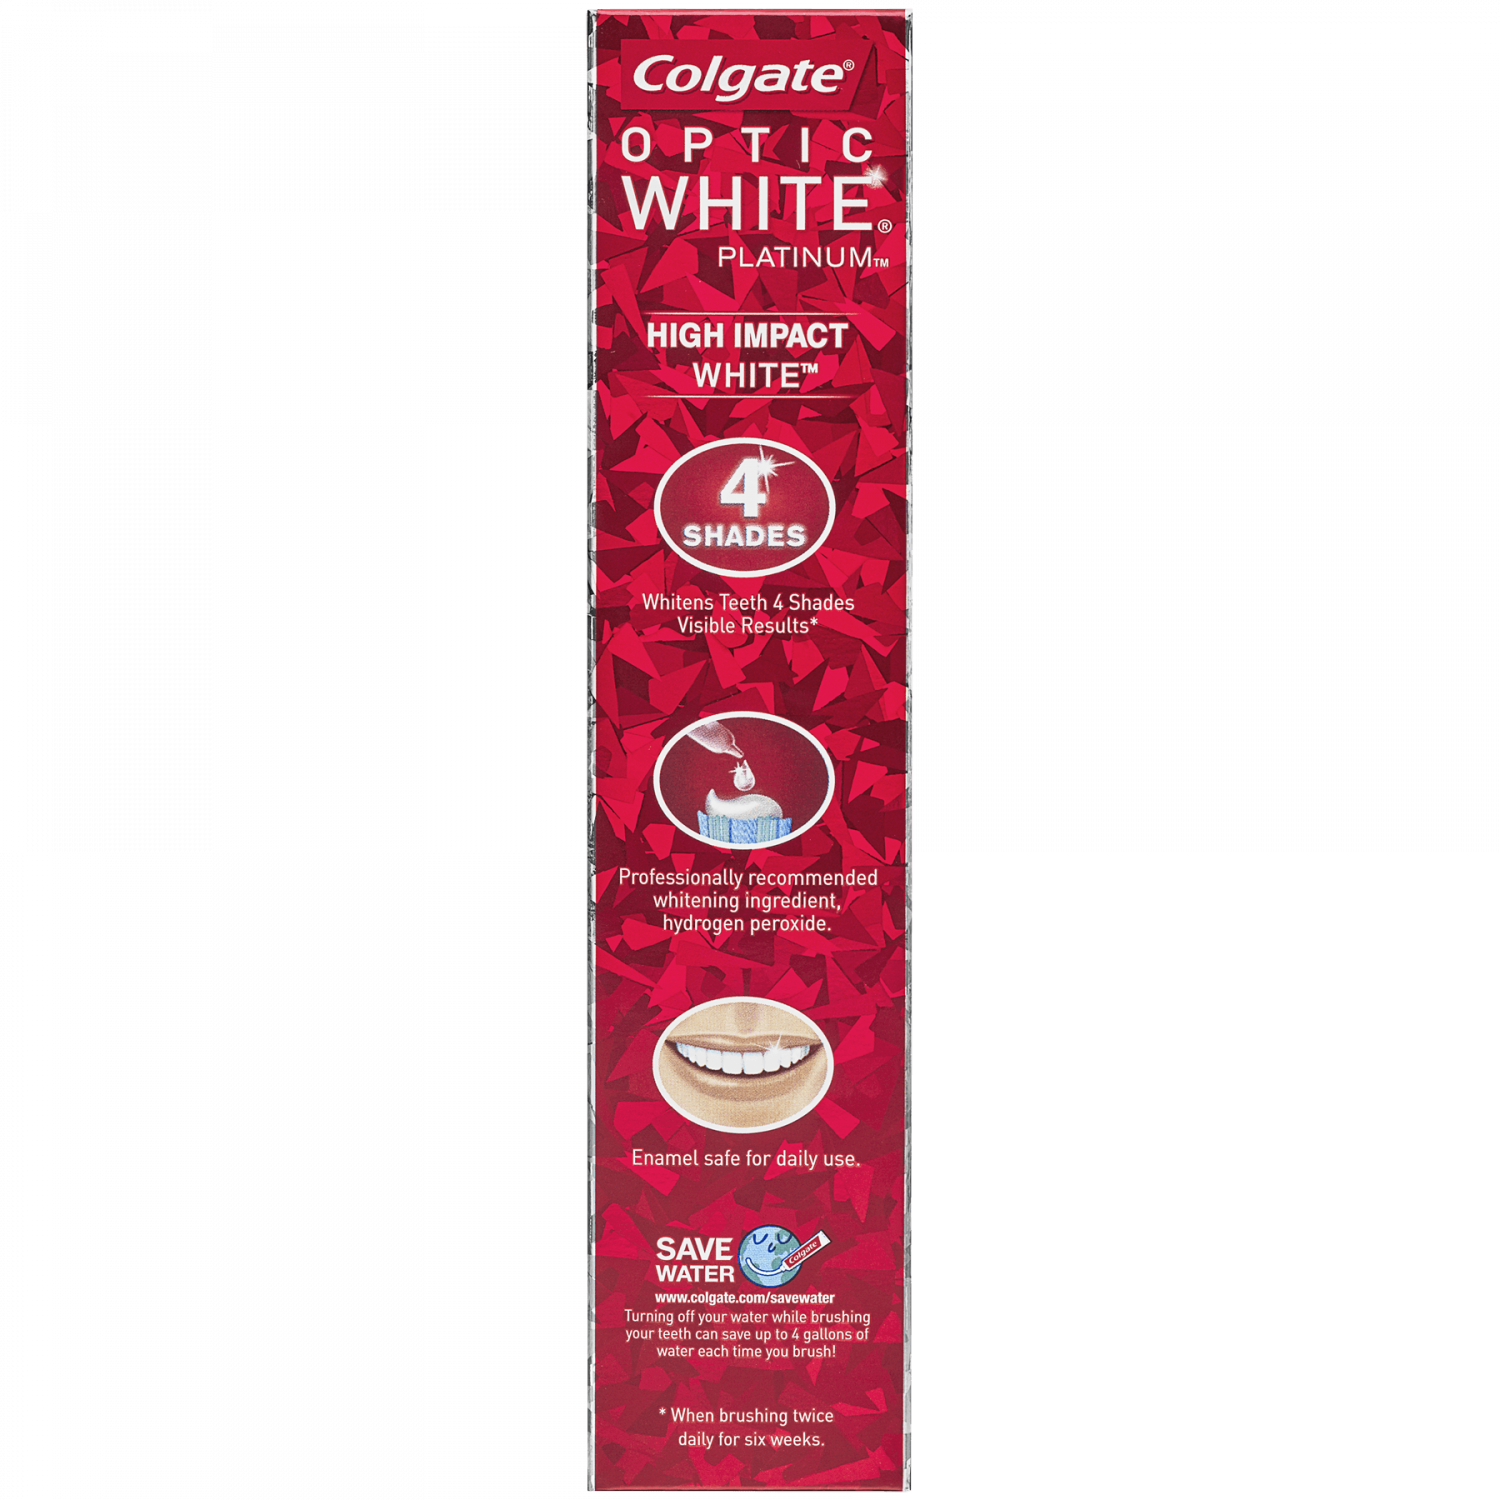 Colgate Optic White High Impact White Whitening Toothpaste, 4.5 oz